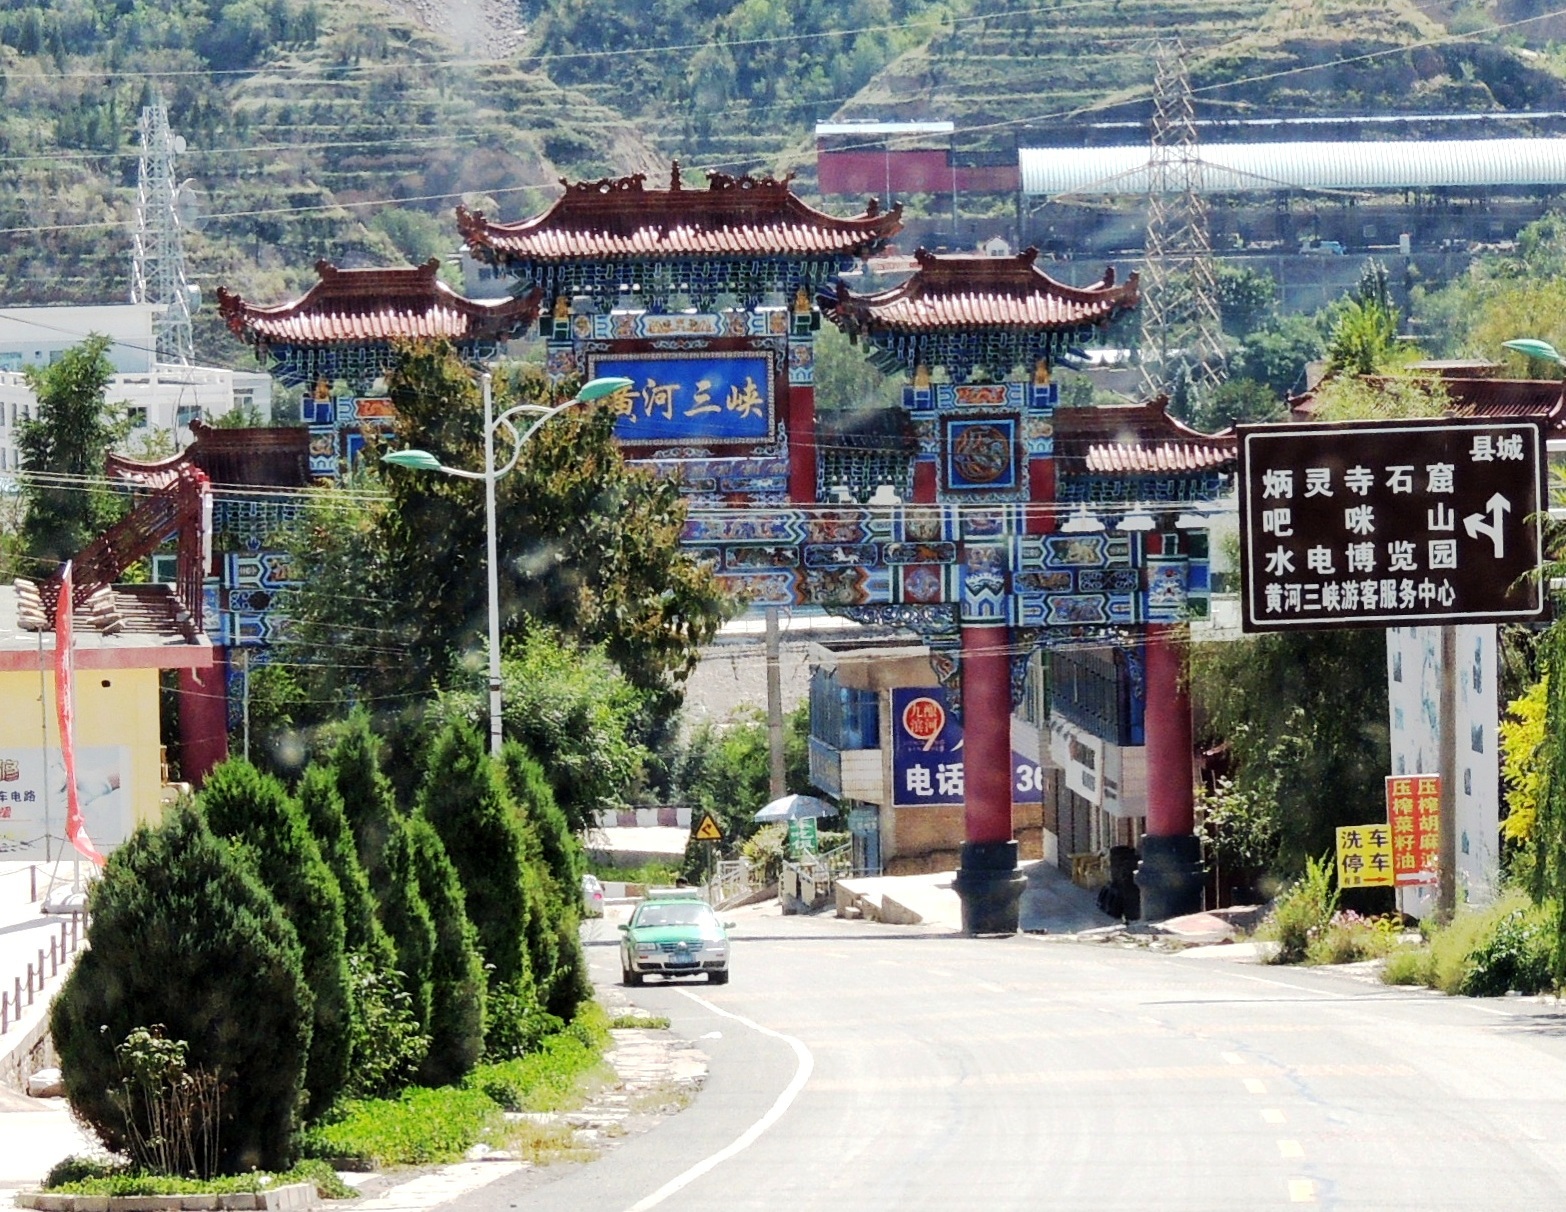 快到刘家峡镇的地方,有座"黄河三峡"牌楼,下车向左,即到大坝游客中心